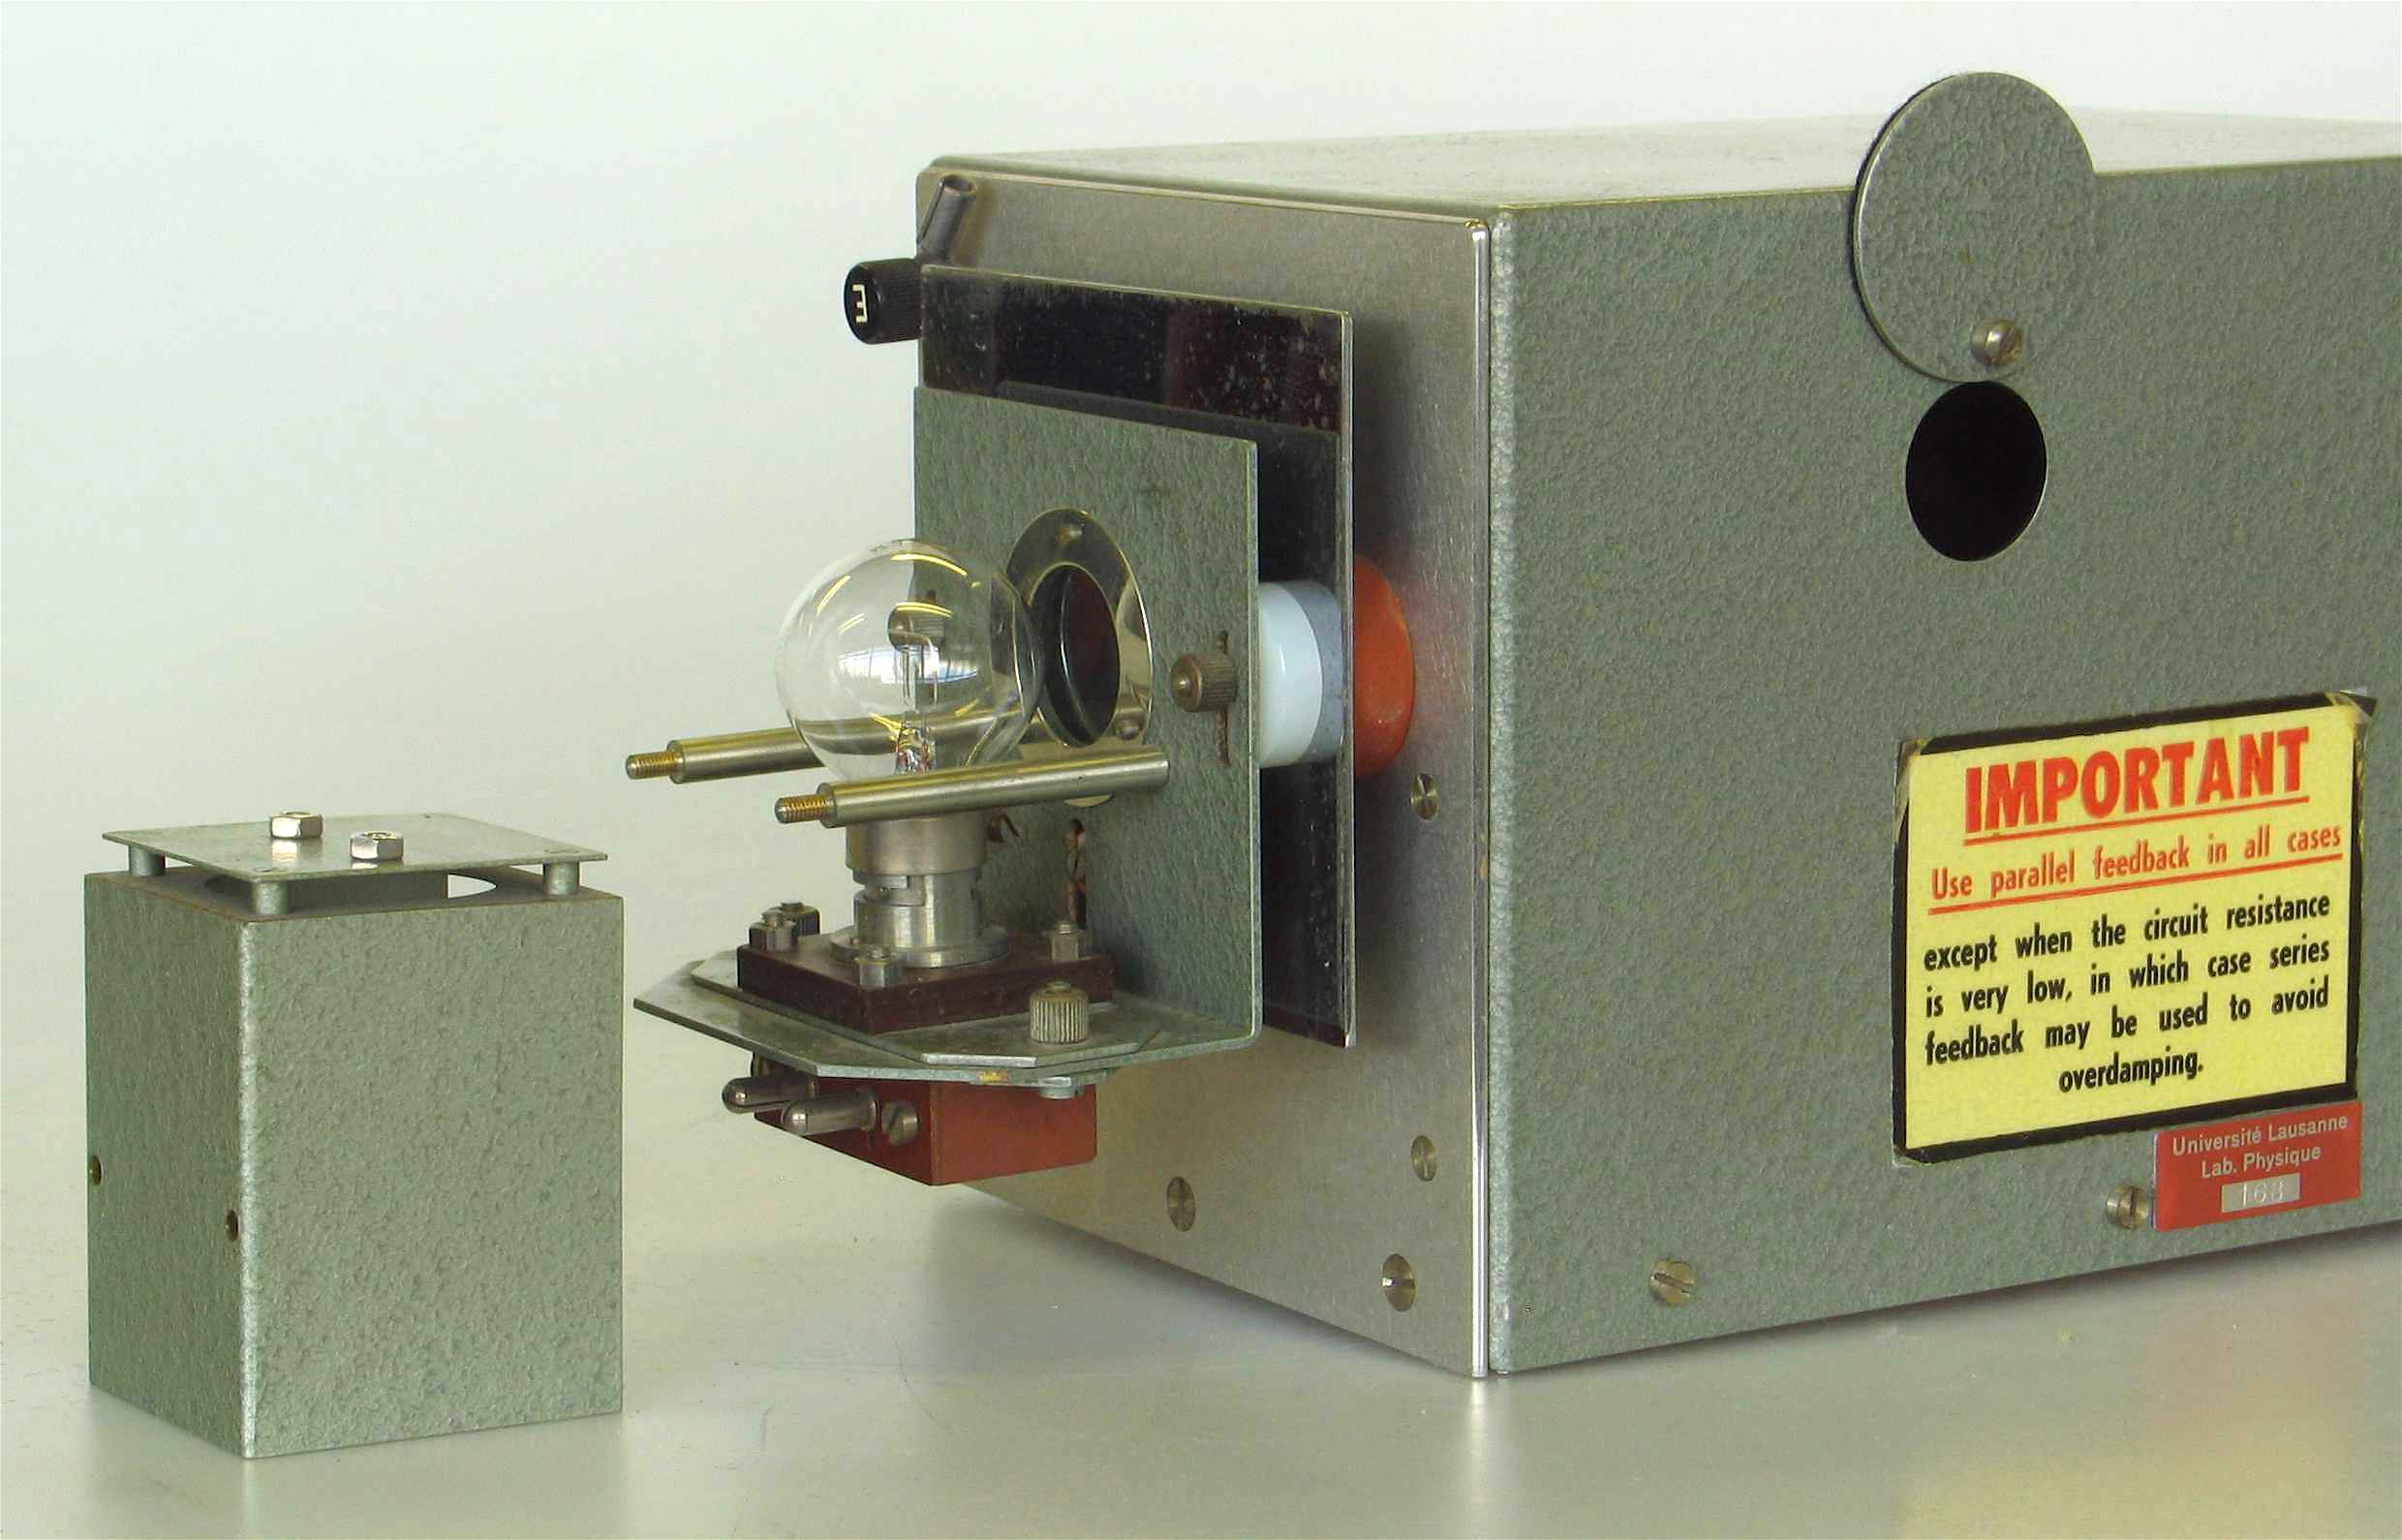 Amplificateurs photoélectriques pour galvanomètre